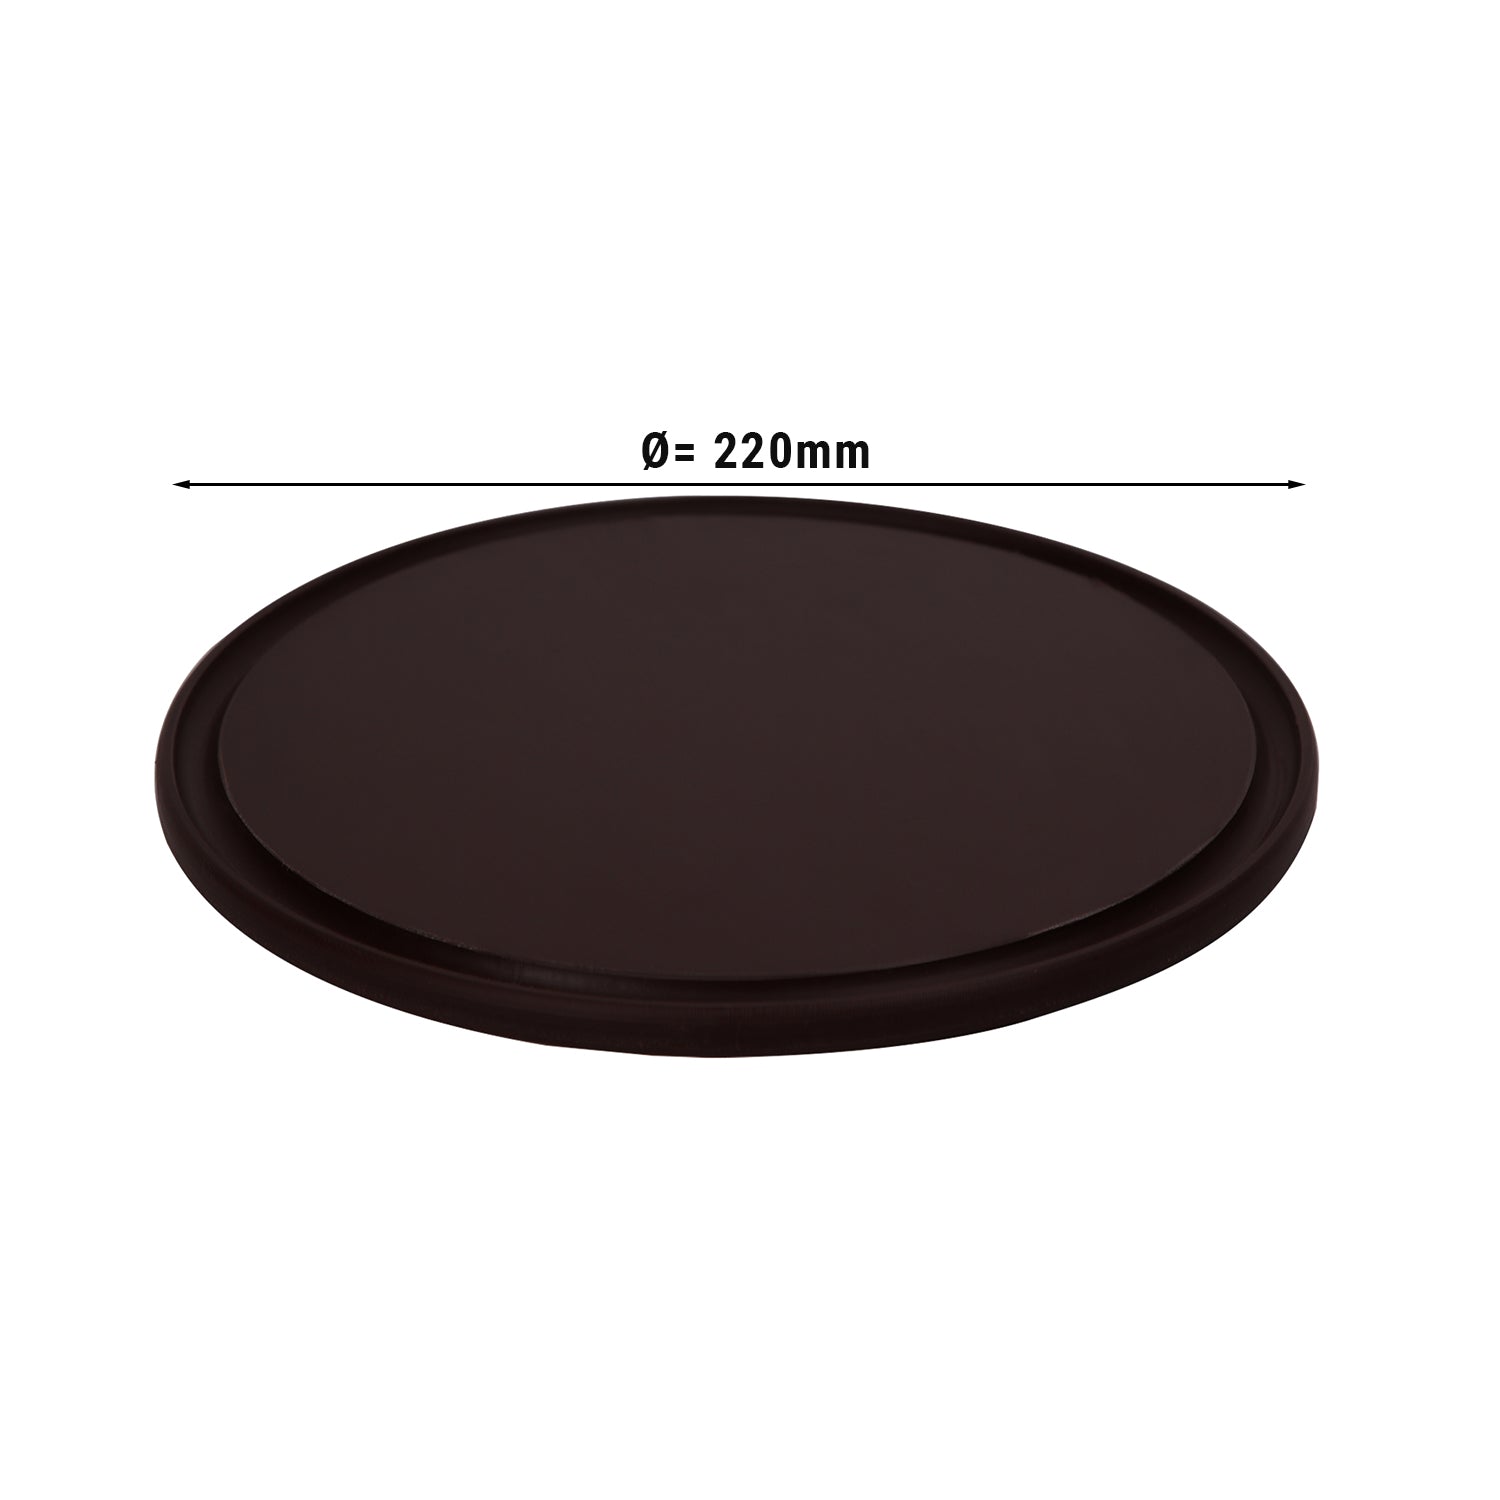 Pizzabakke - 22 cm i diameter